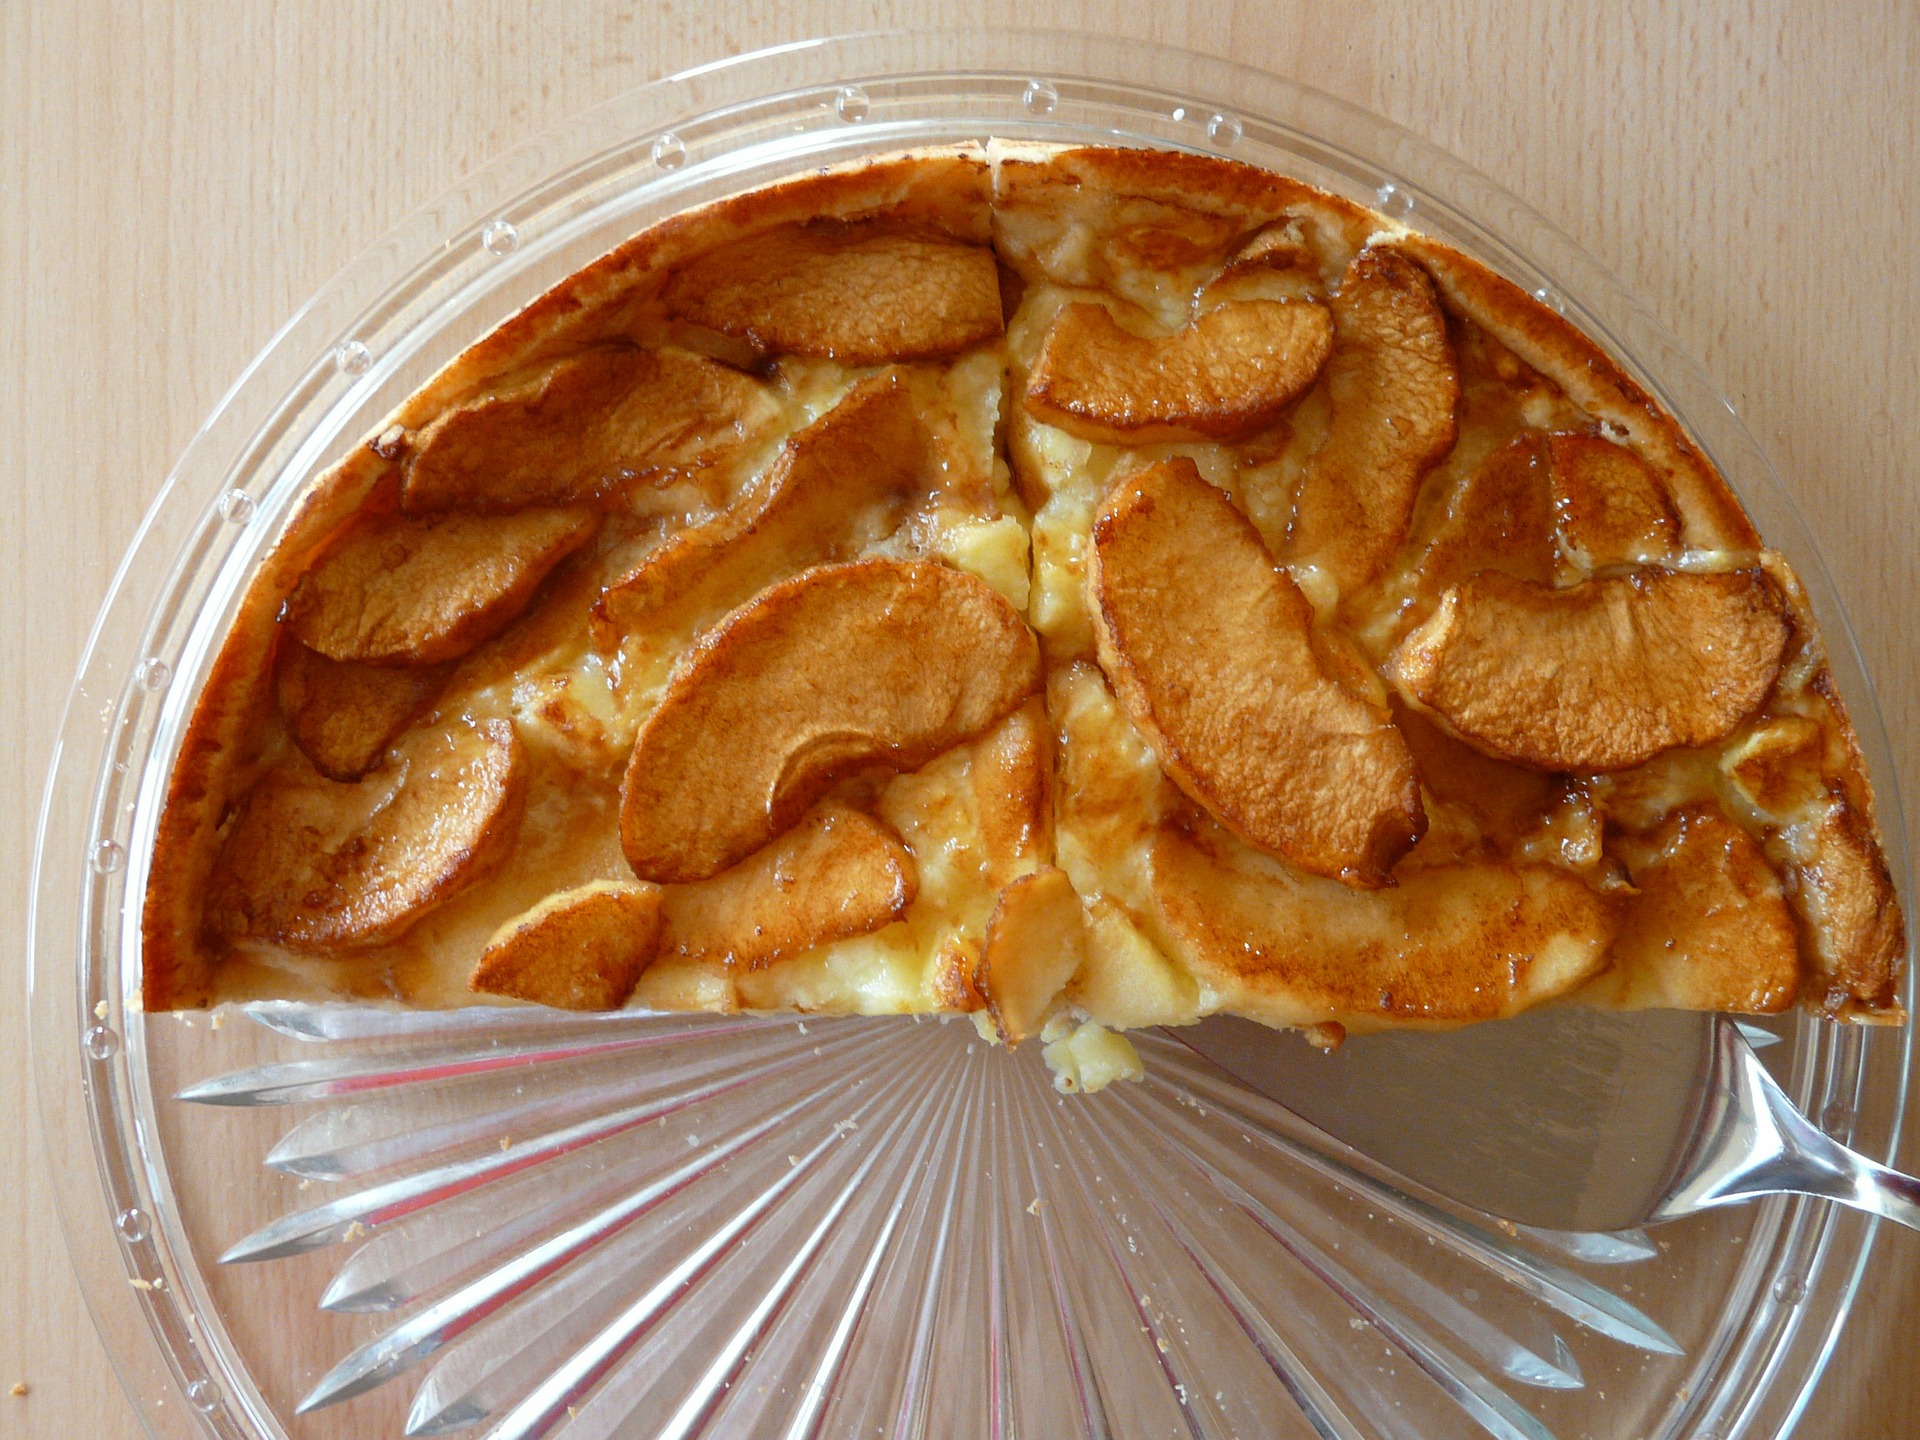 Apfelkuchen aus Joghurt-Rührteig mit Ahornsirup - Alles über Backen